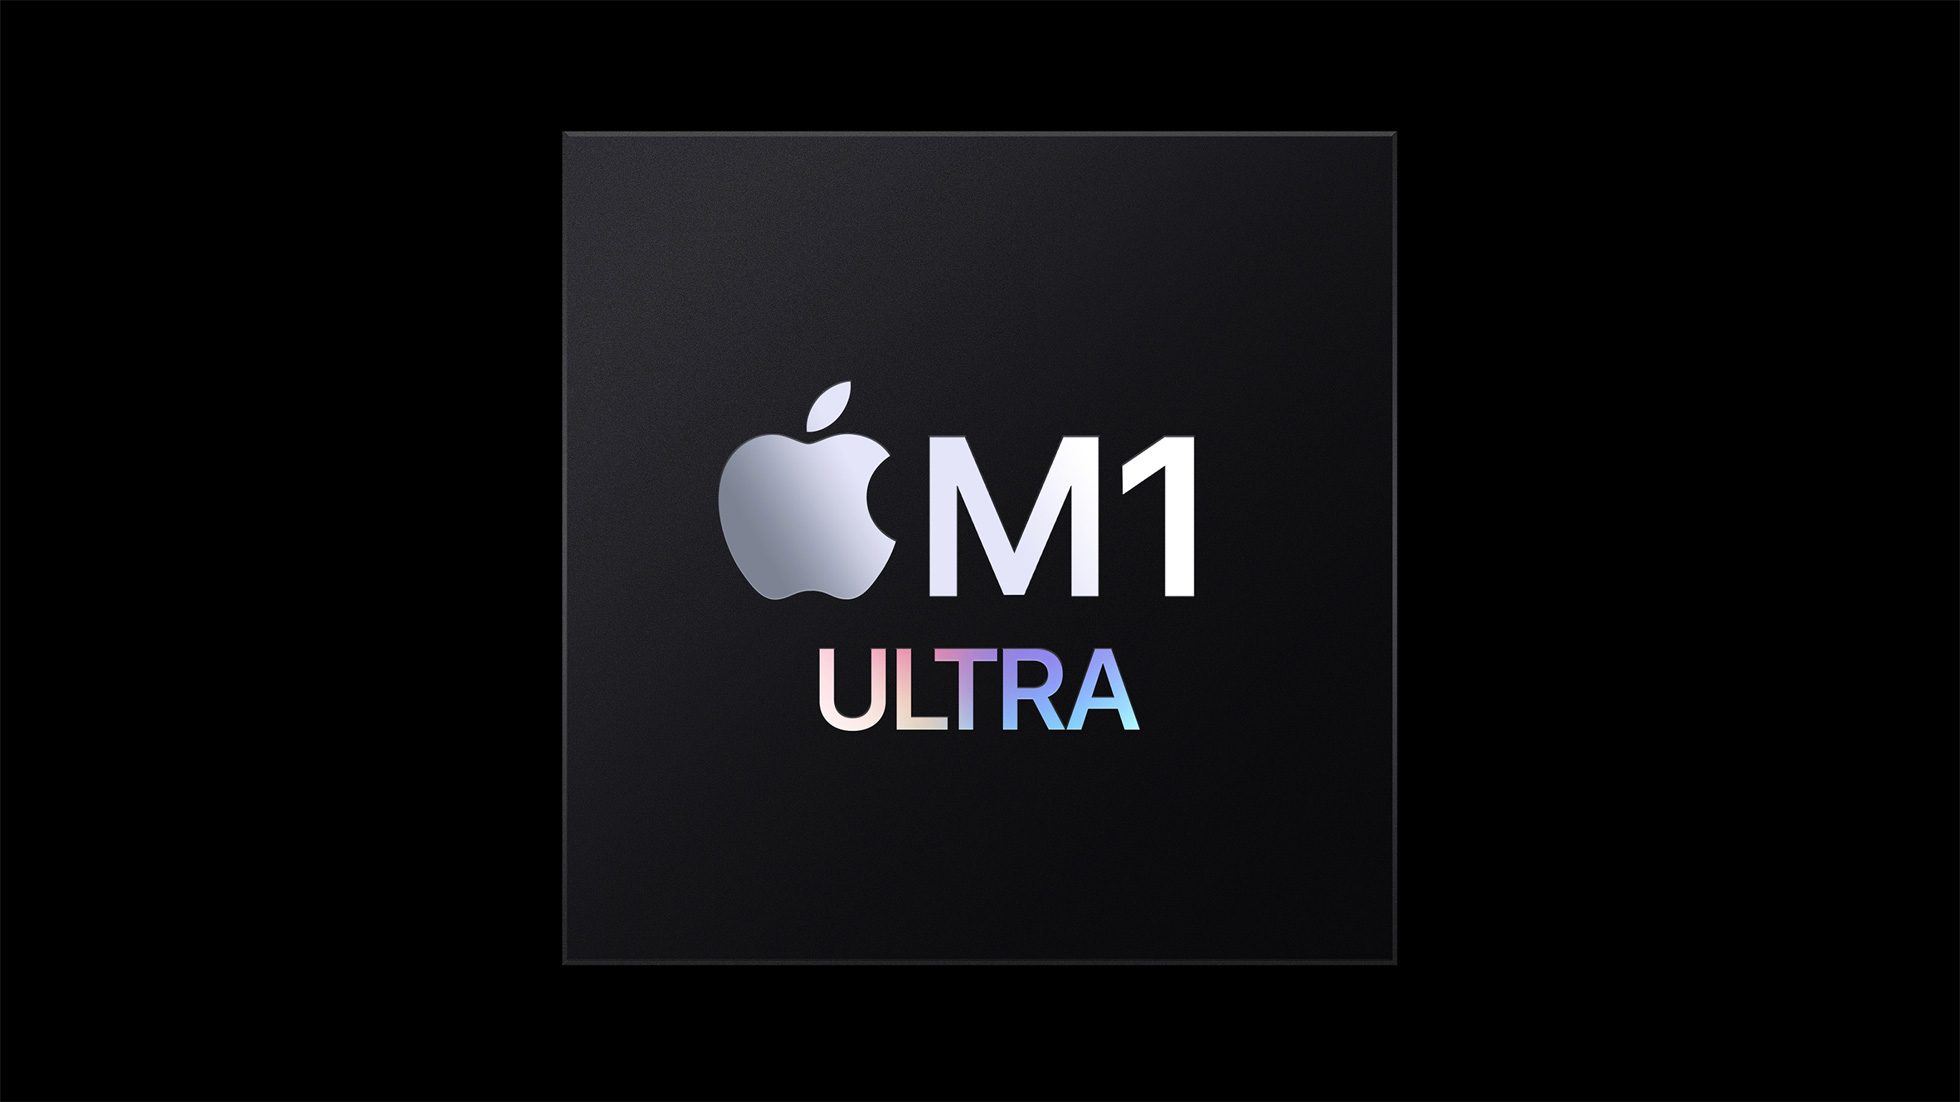 M1 Ultra Hero Shot - Credit: Apple